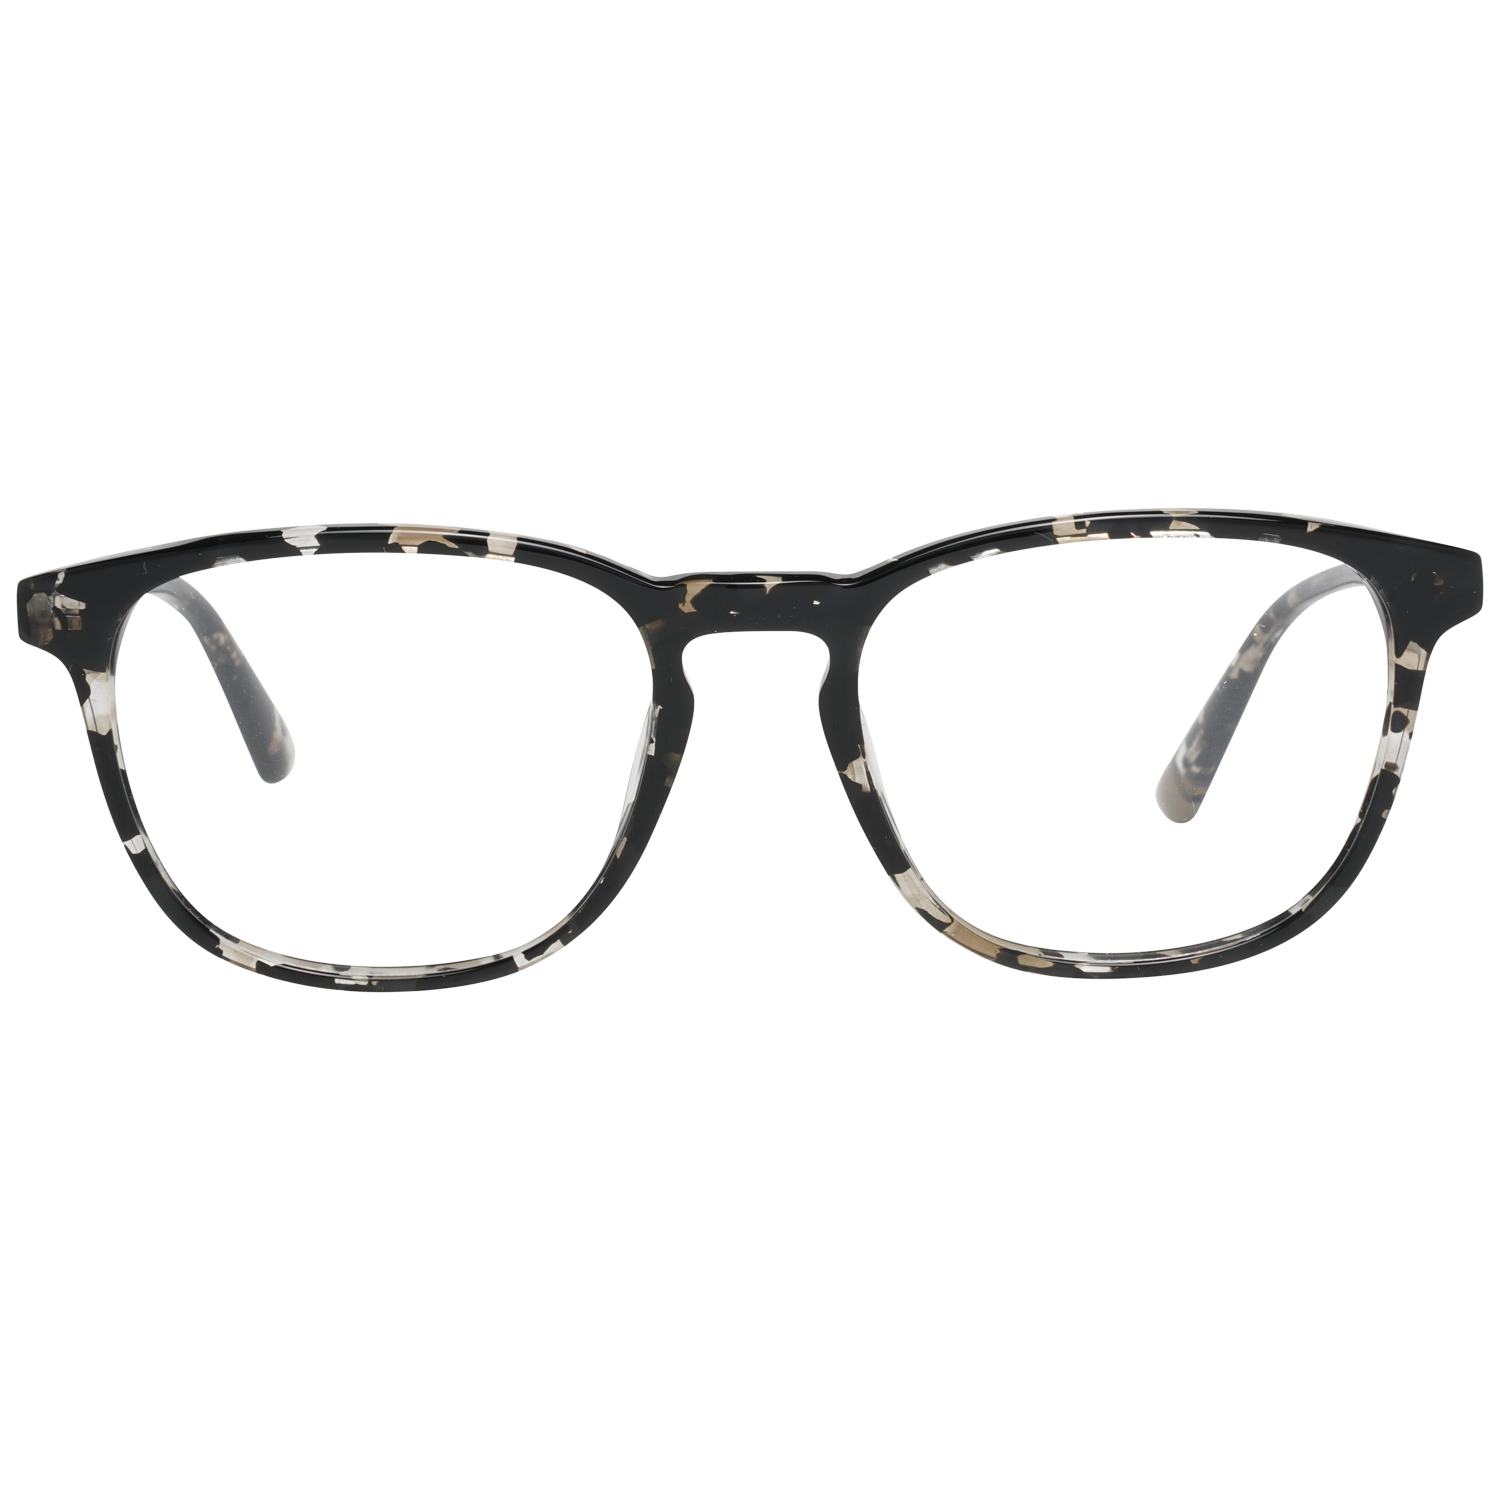 Web Frames Web Glasses Optical Frame WE5293 055 52 Eyeglasses Eyewear UK USA Australia 